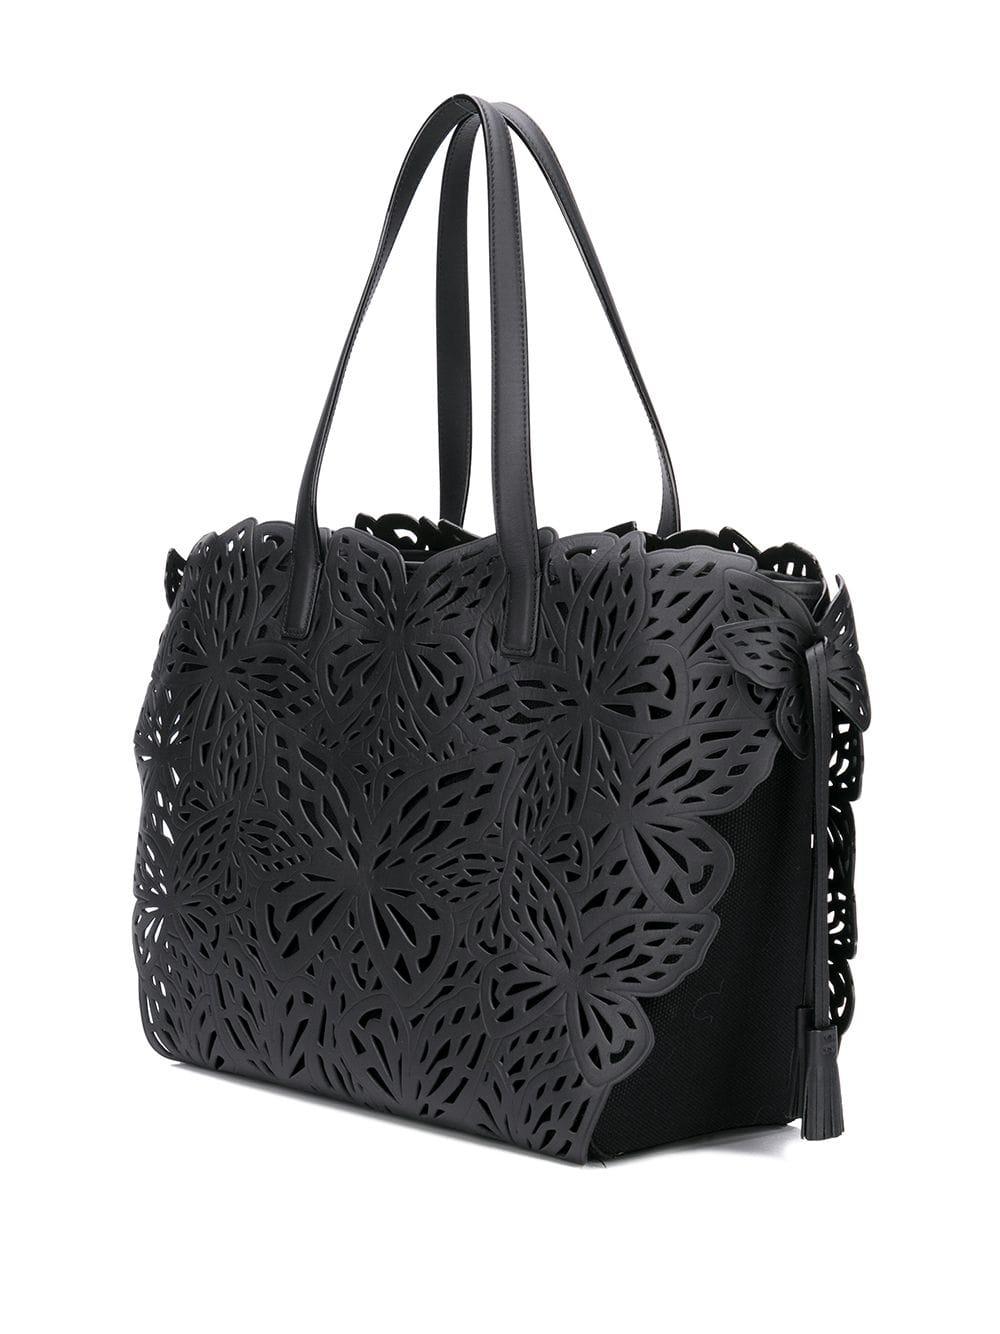 Sophia Webster Leather Liara Lasercut-butterfly Tote Bag in Black 